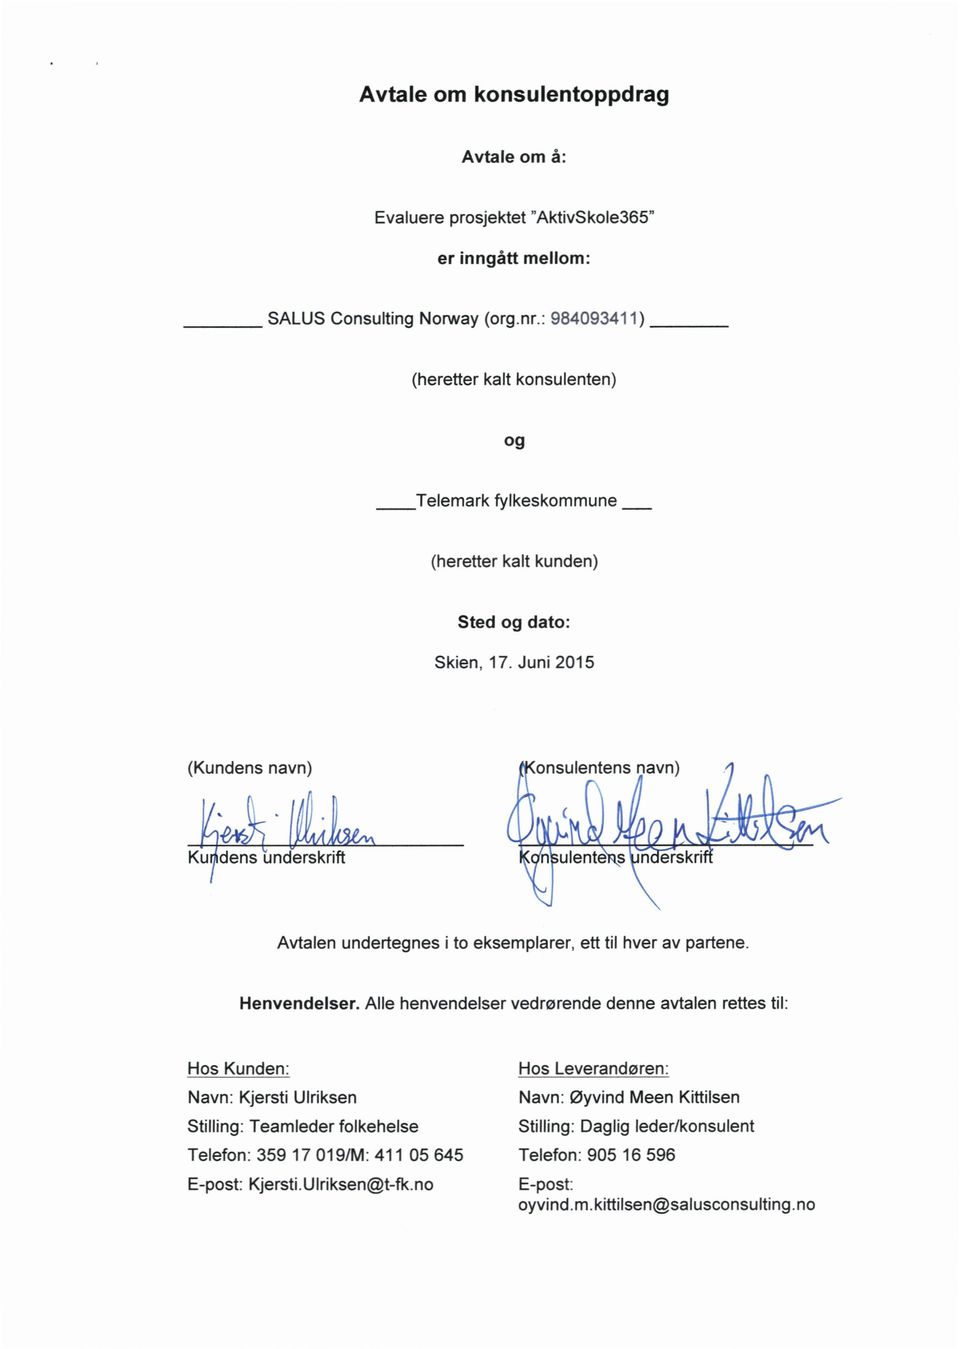 Juni 2015 (Kundens navn rum Kuyldensimdverskrift Avtalen undertegnes i to eksemplarer, ett til hver av partene. Henvendelser.